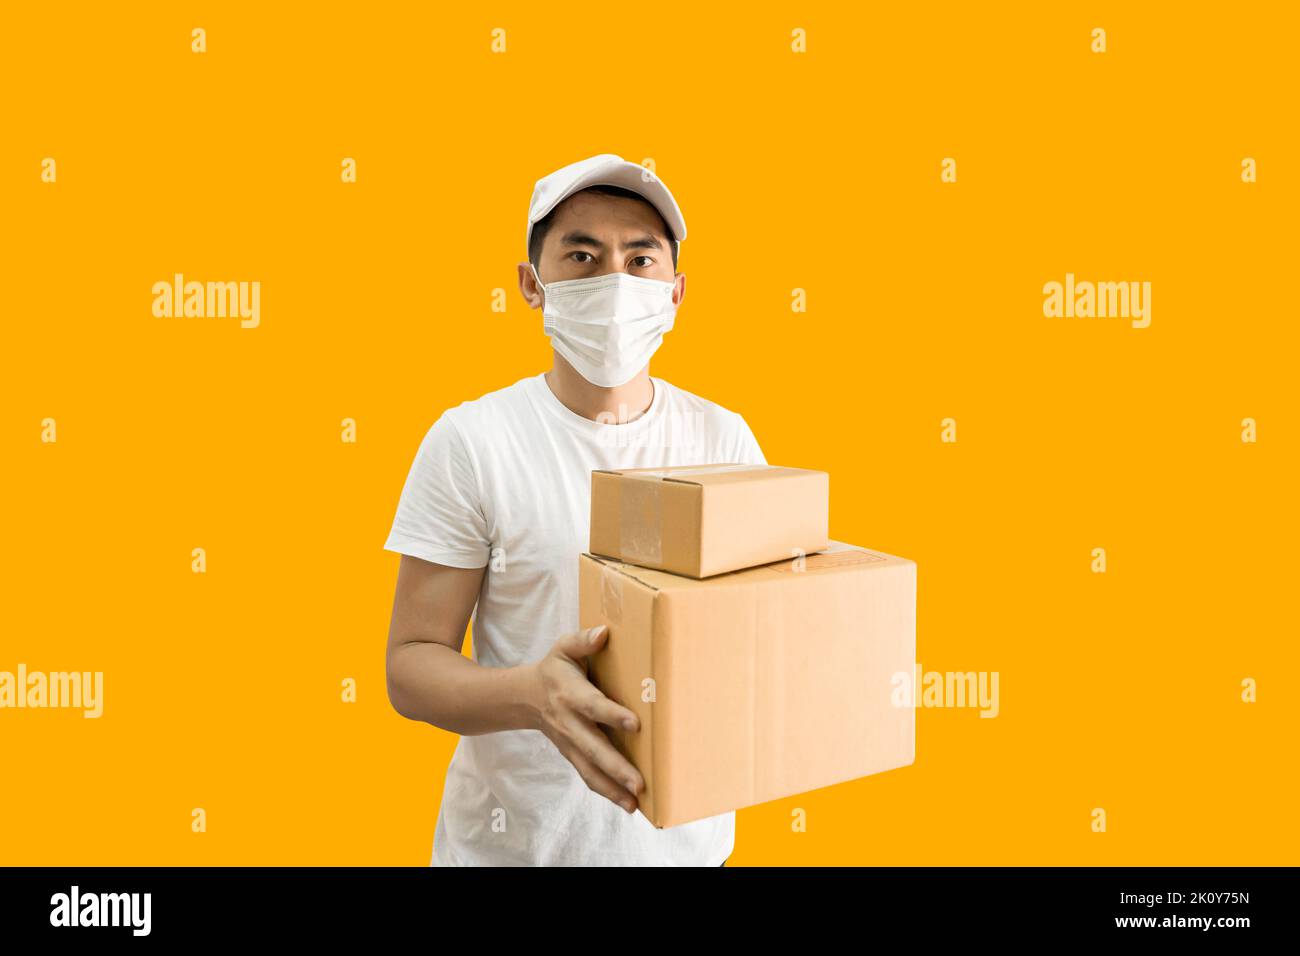 Jeune homme de livraison asiatique portant une casquette et un t-shirt blanc vierge tenant une boîte postale isolée sur fond jaune. concept de service de livraison express. Banque D'Images